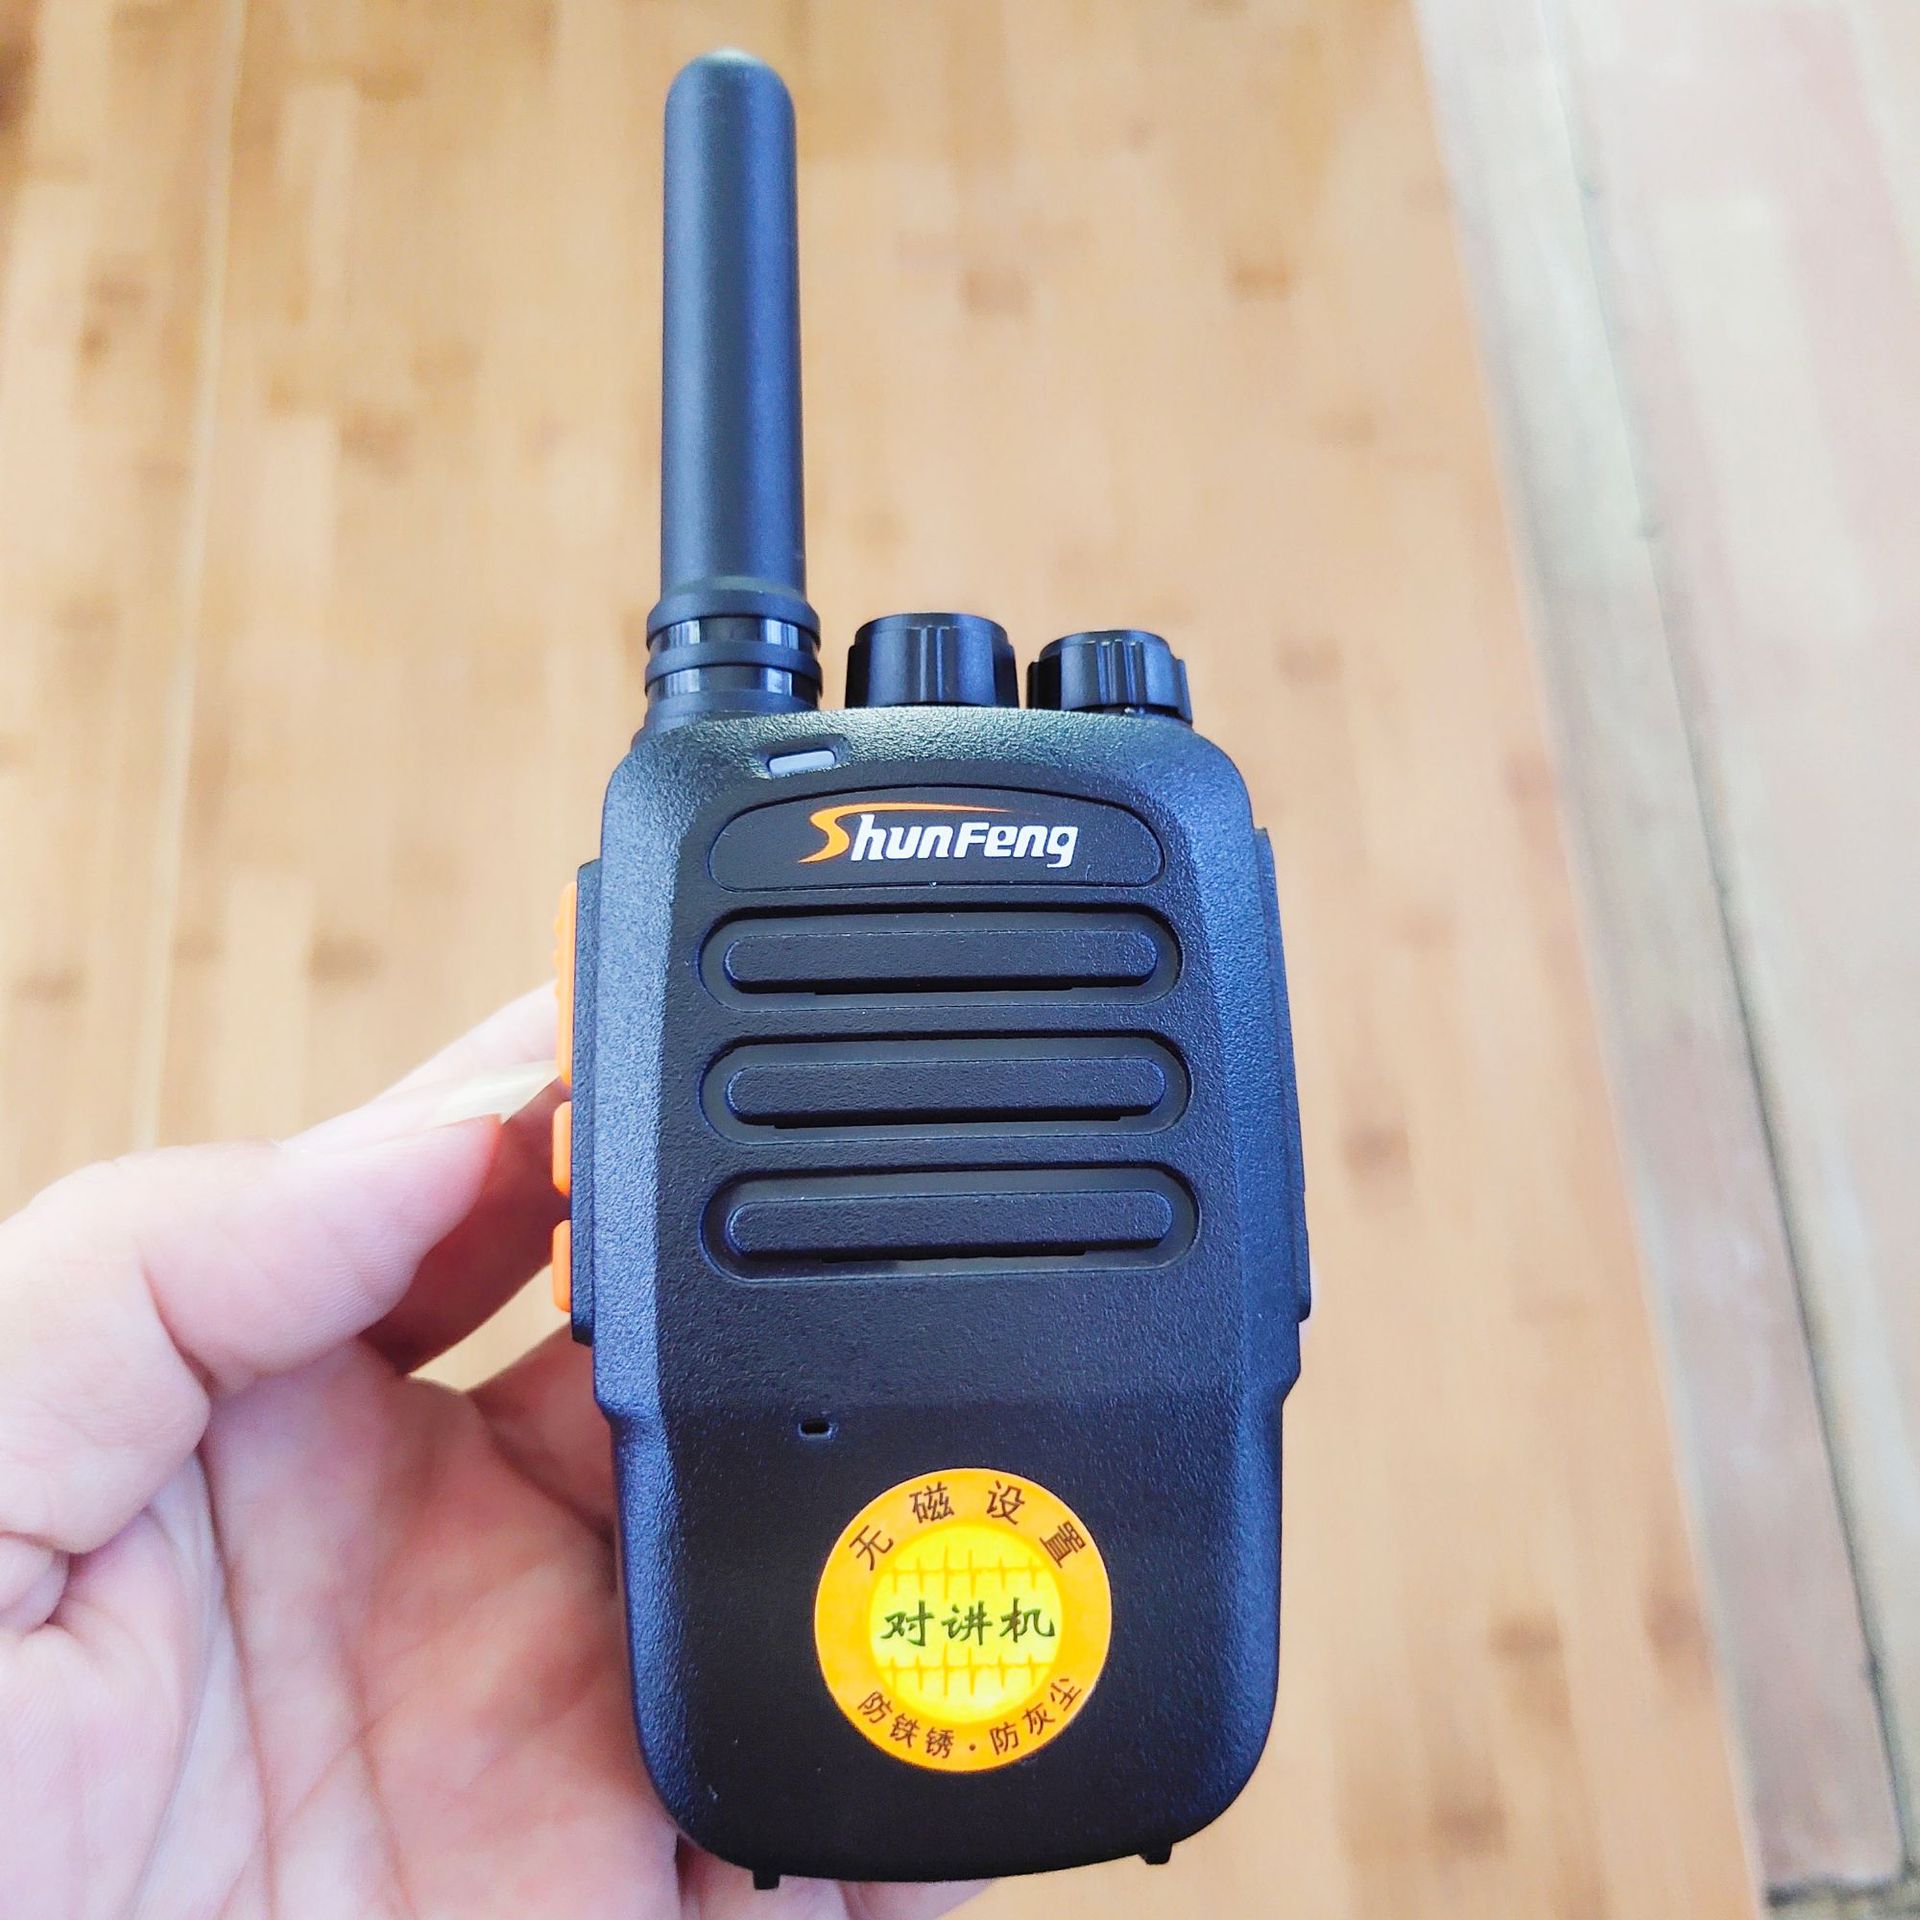 Downwind 319 Civil Mini hold walkie-talkie 318 Small Mini walkie-talkie hotel Restaurant walkie-talkie